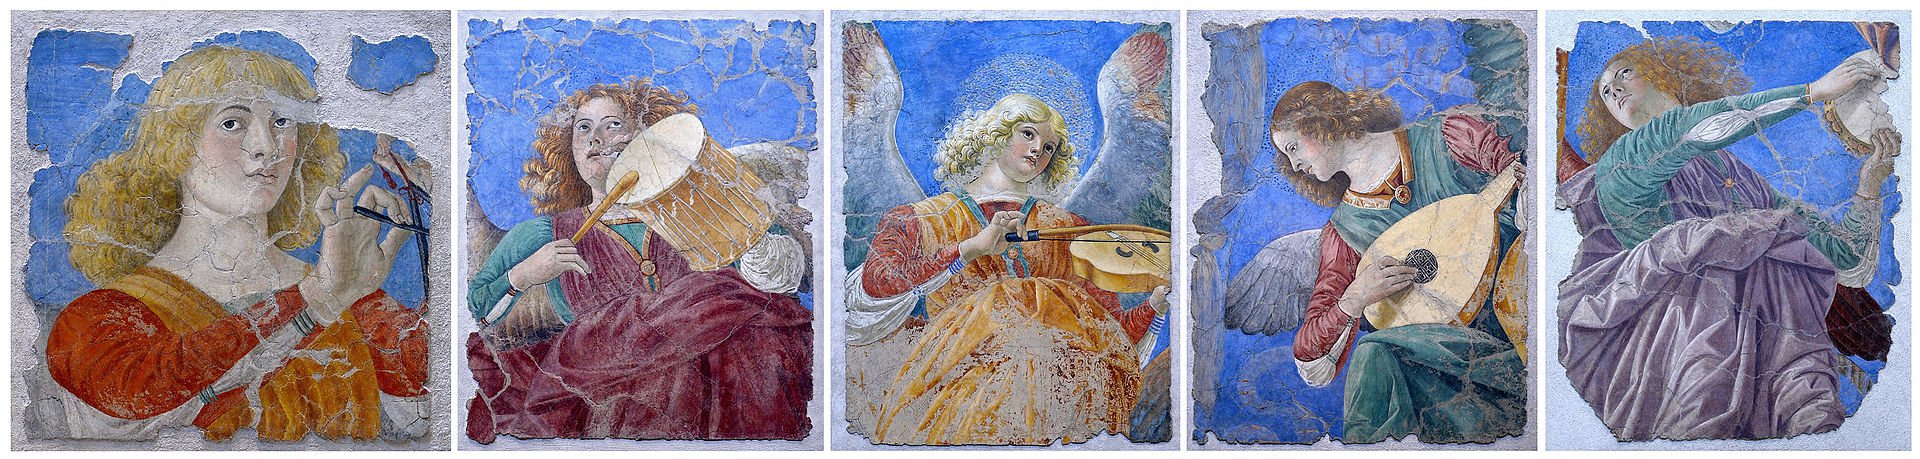 Ангелы Мелоццо-Пинакотека Ватикана